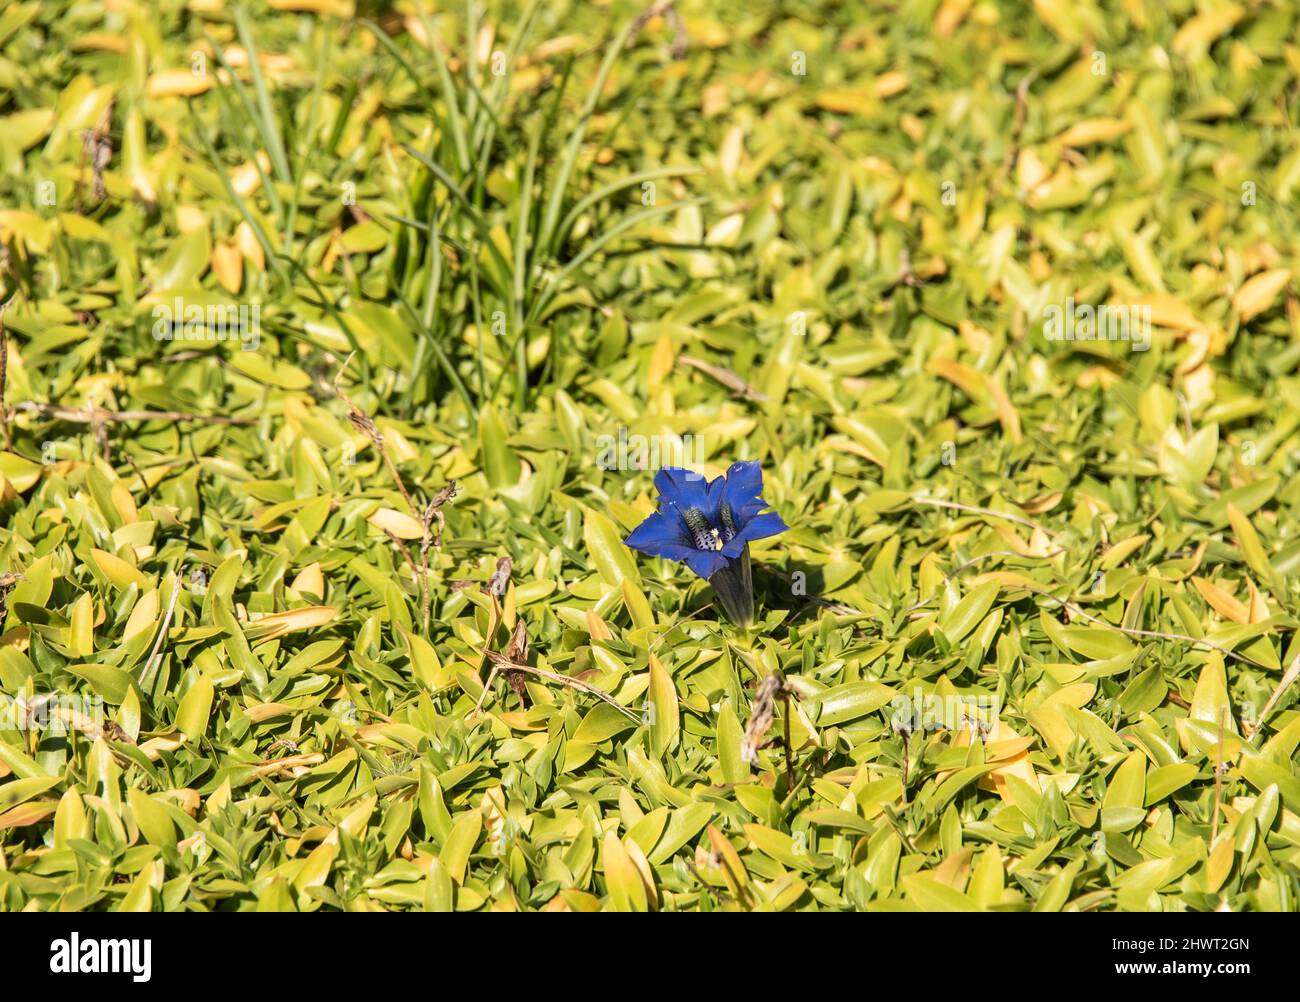 la trompeta azul como flor de un genciano sin tallo en un jardín de verano Foto de stock